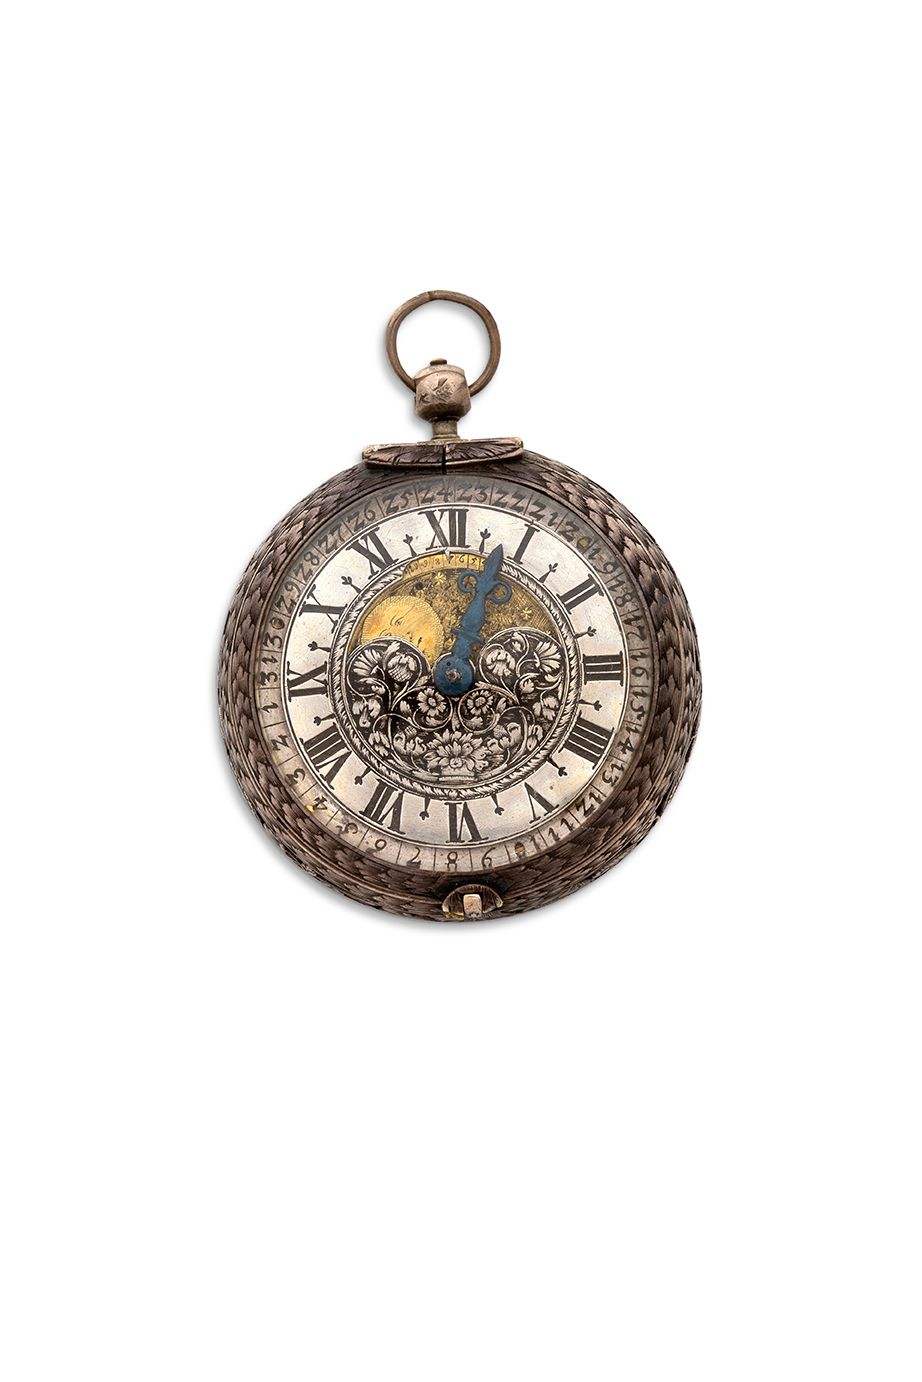 Chgs, Jn NURNBERG 
Silberne Uhr mit Einzeiger, Datum und Mondphasen.



Gehäuse &hellip;